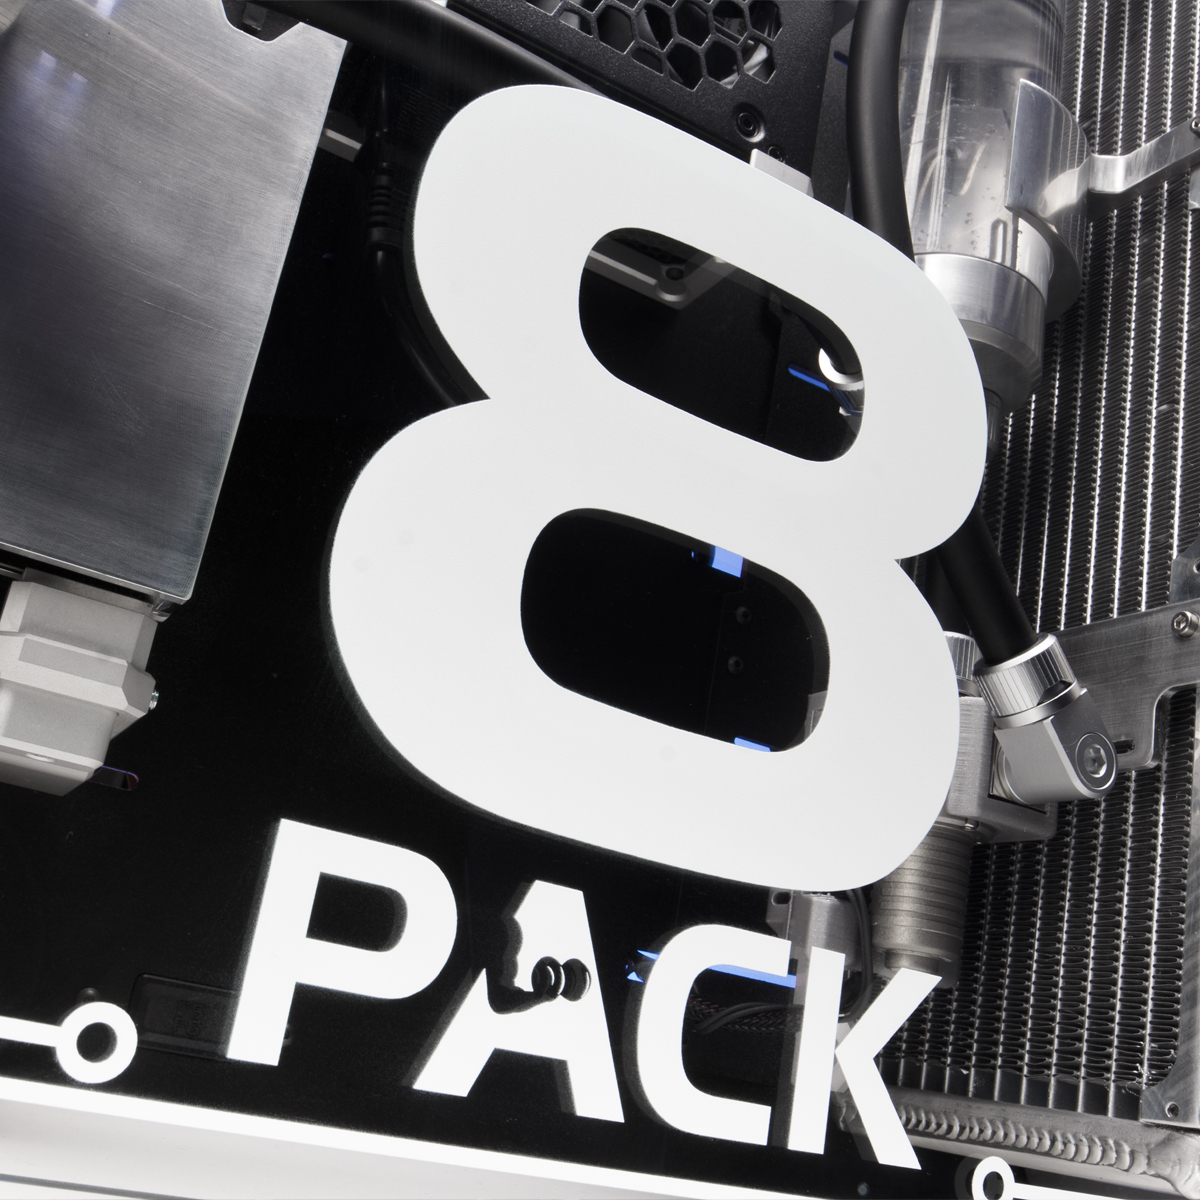 8Pack - Ordenador 8Pack Frame R8i